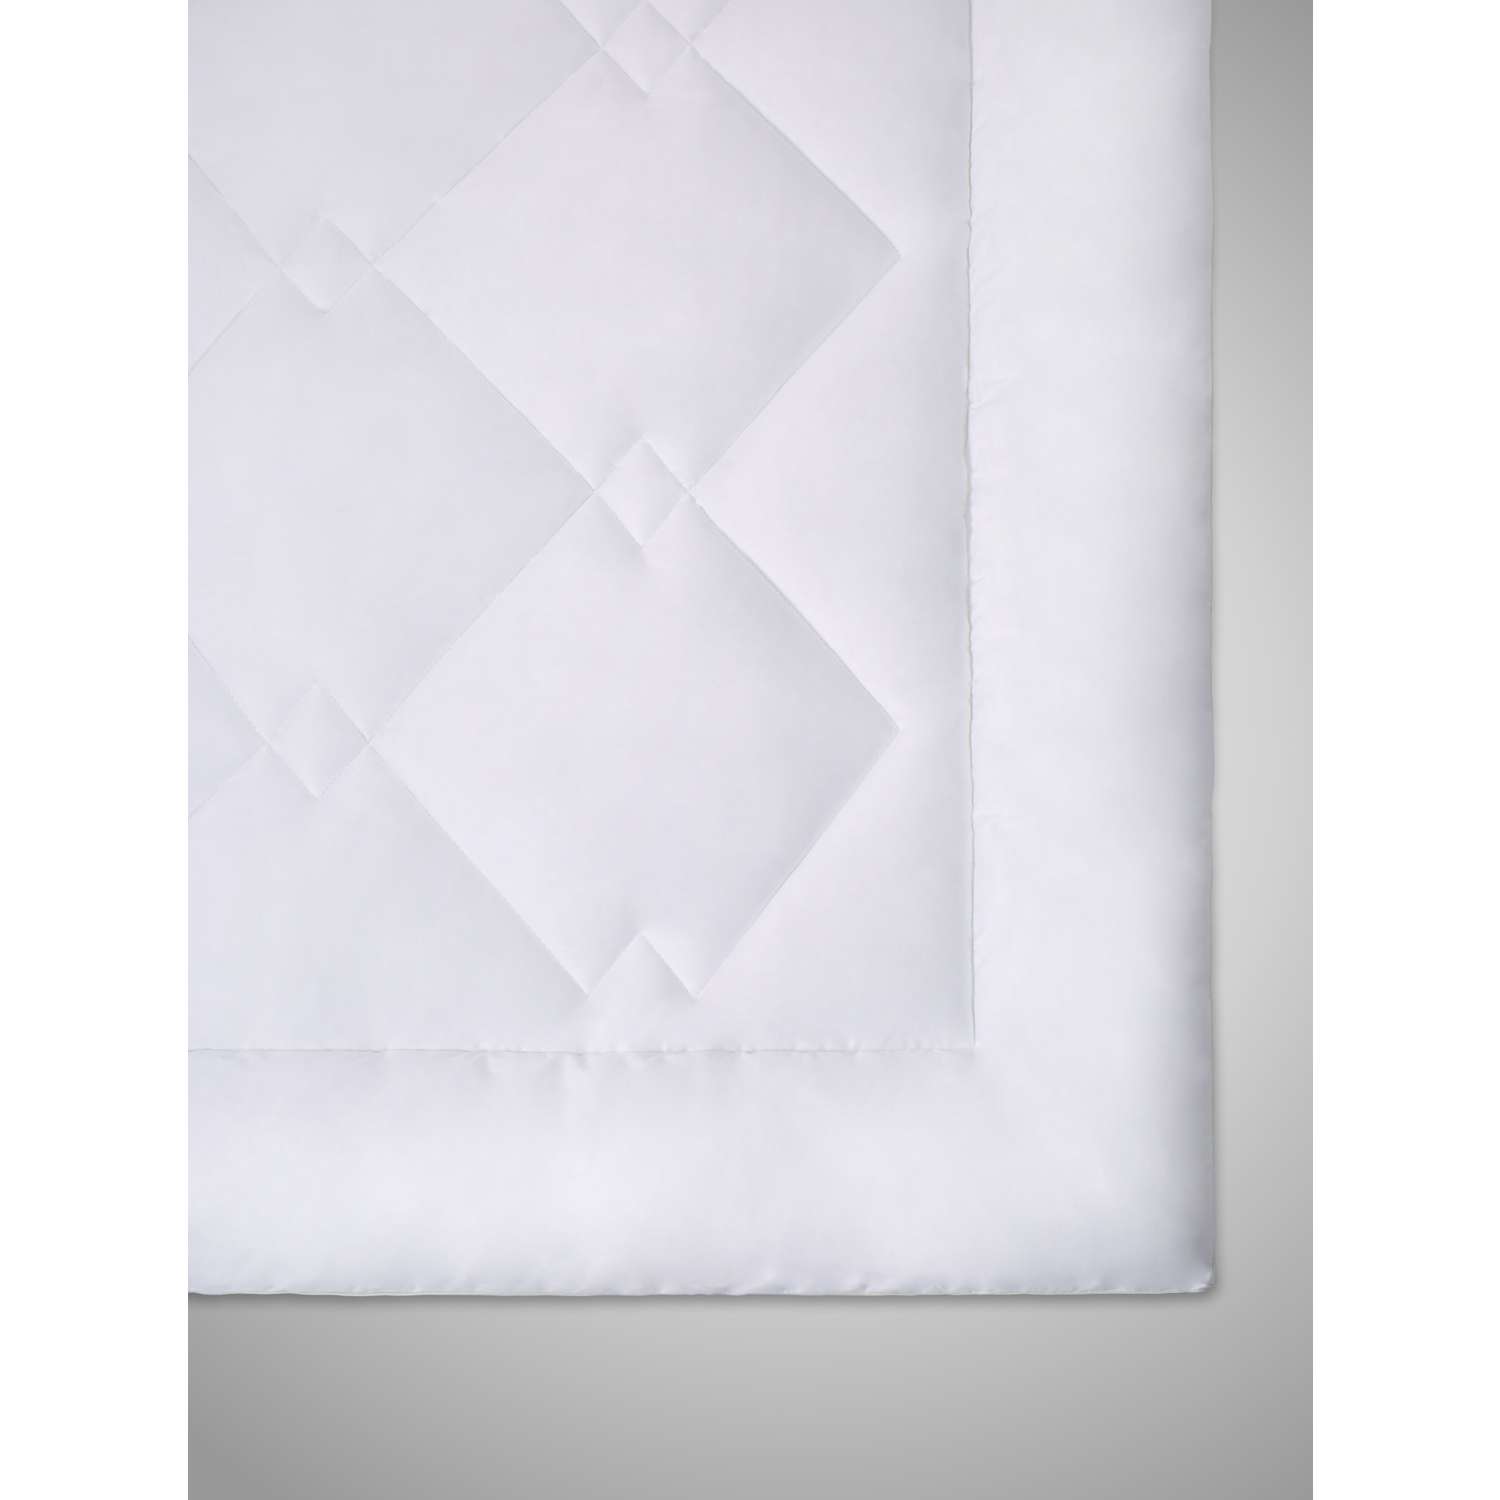 Одеяло SONNO URBAN Евро 200x220 с наполнителем Amicor Ослепительно белый - фото 2